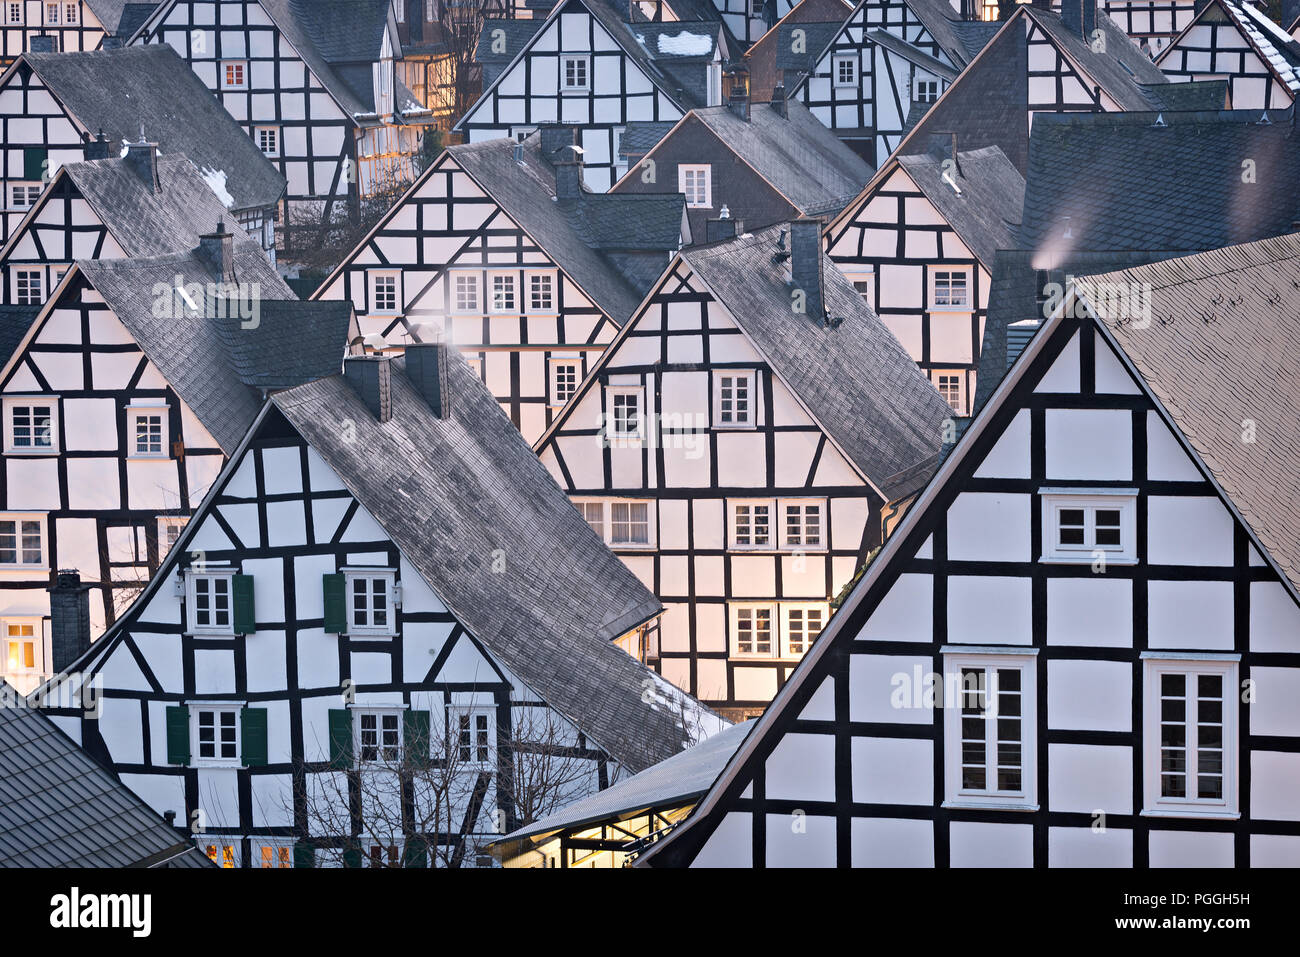 L'architecture médiévale de maisons à pans de bois dans les couleurs noir et blanc en Alter Vacances, le centre de Freudenberg, Allemagne. Banque D'Images